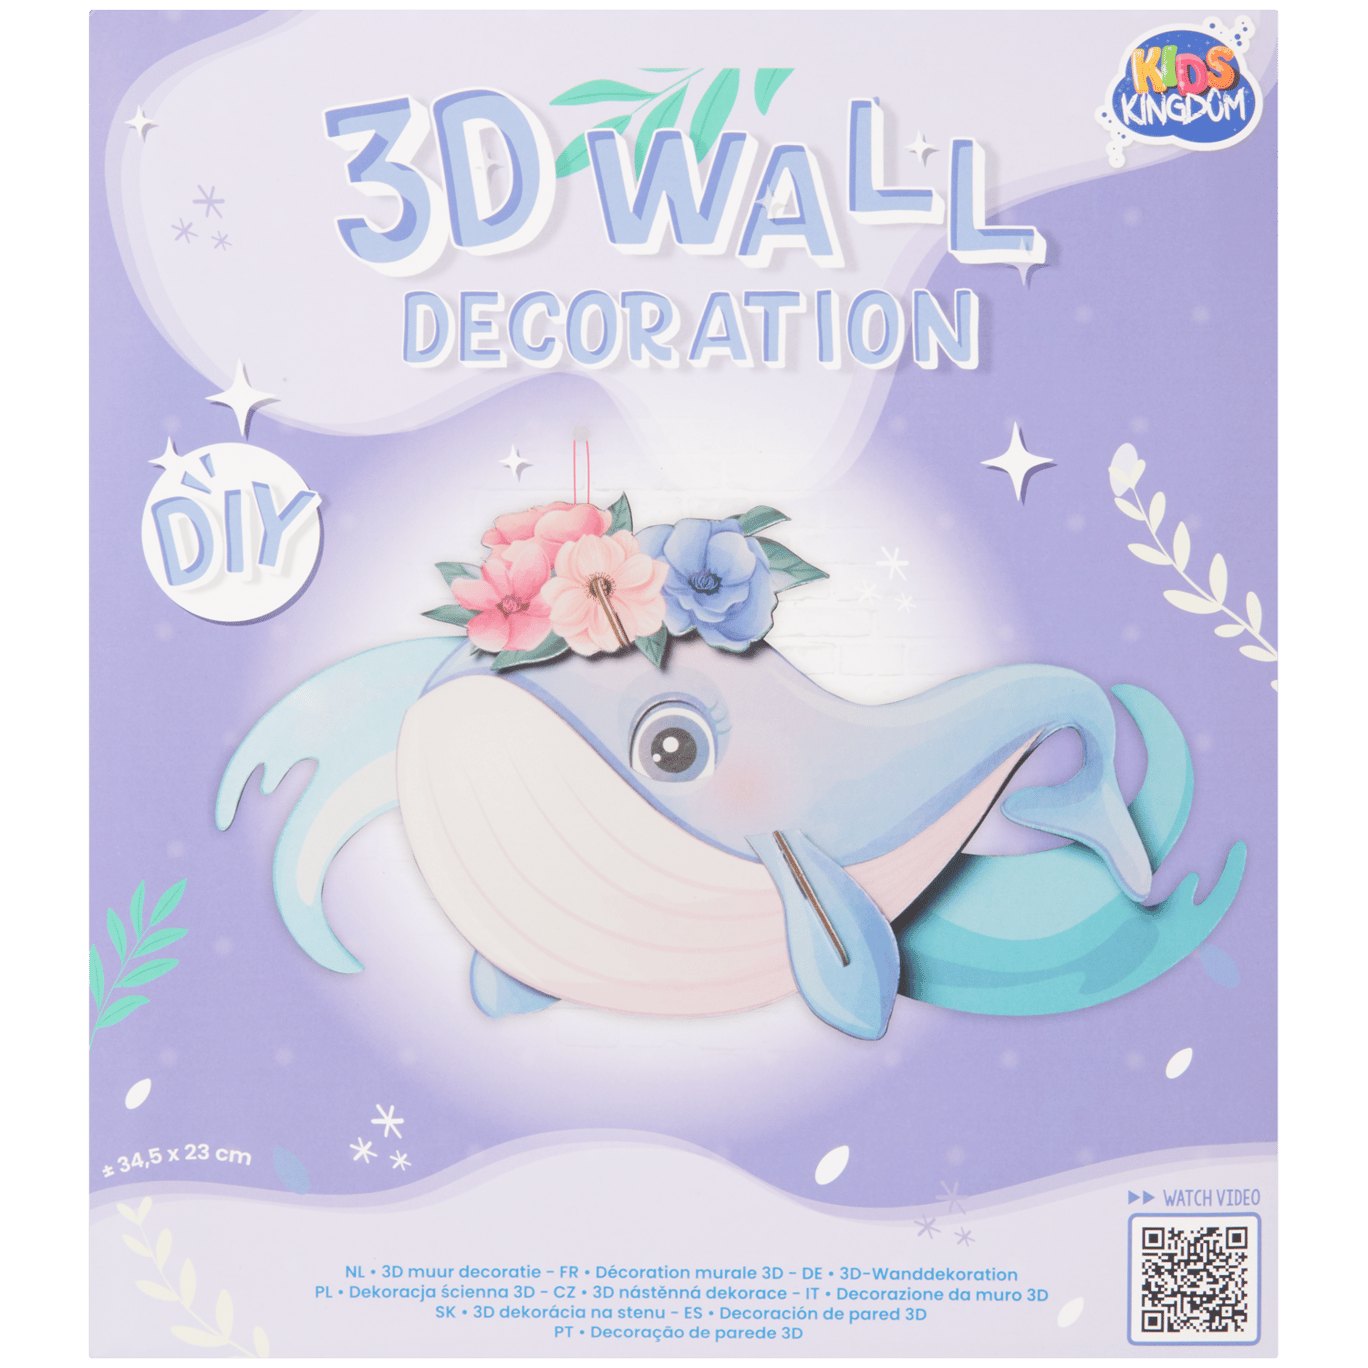 Kit créatif décoration murale 3D Kids Kingdom